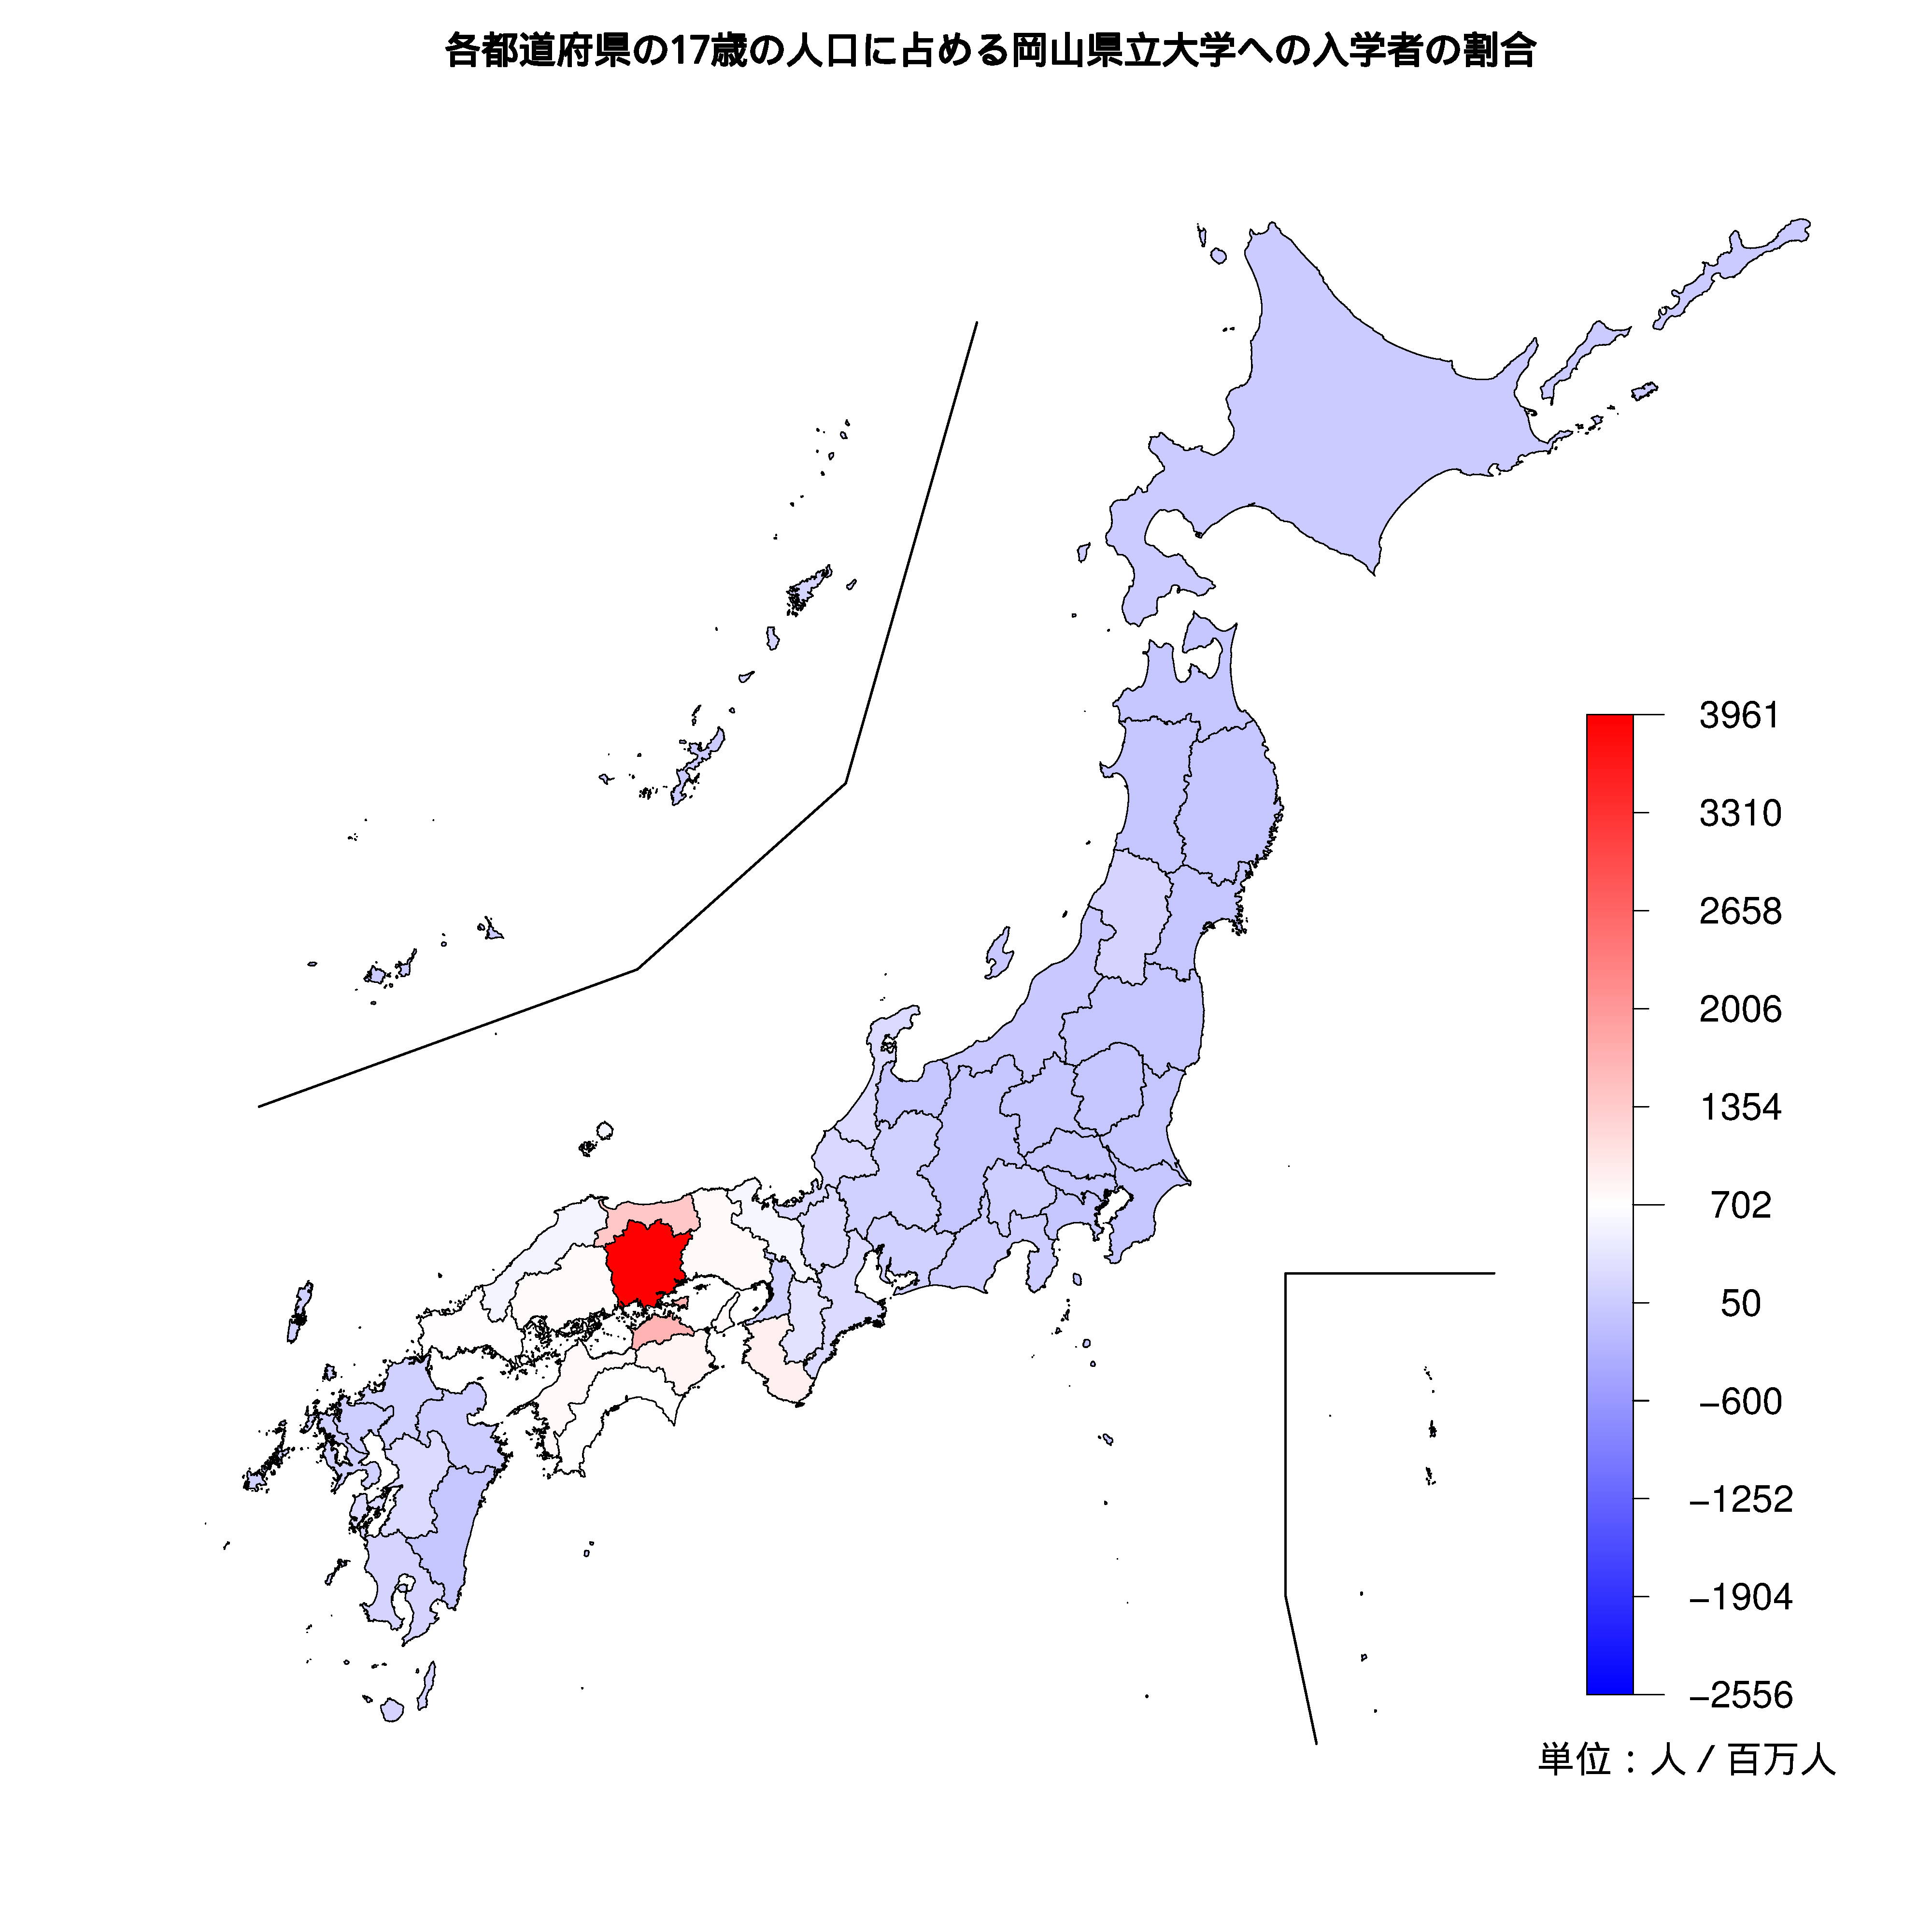 岡山県立大学への入学者が多い都道府県の色分け地図